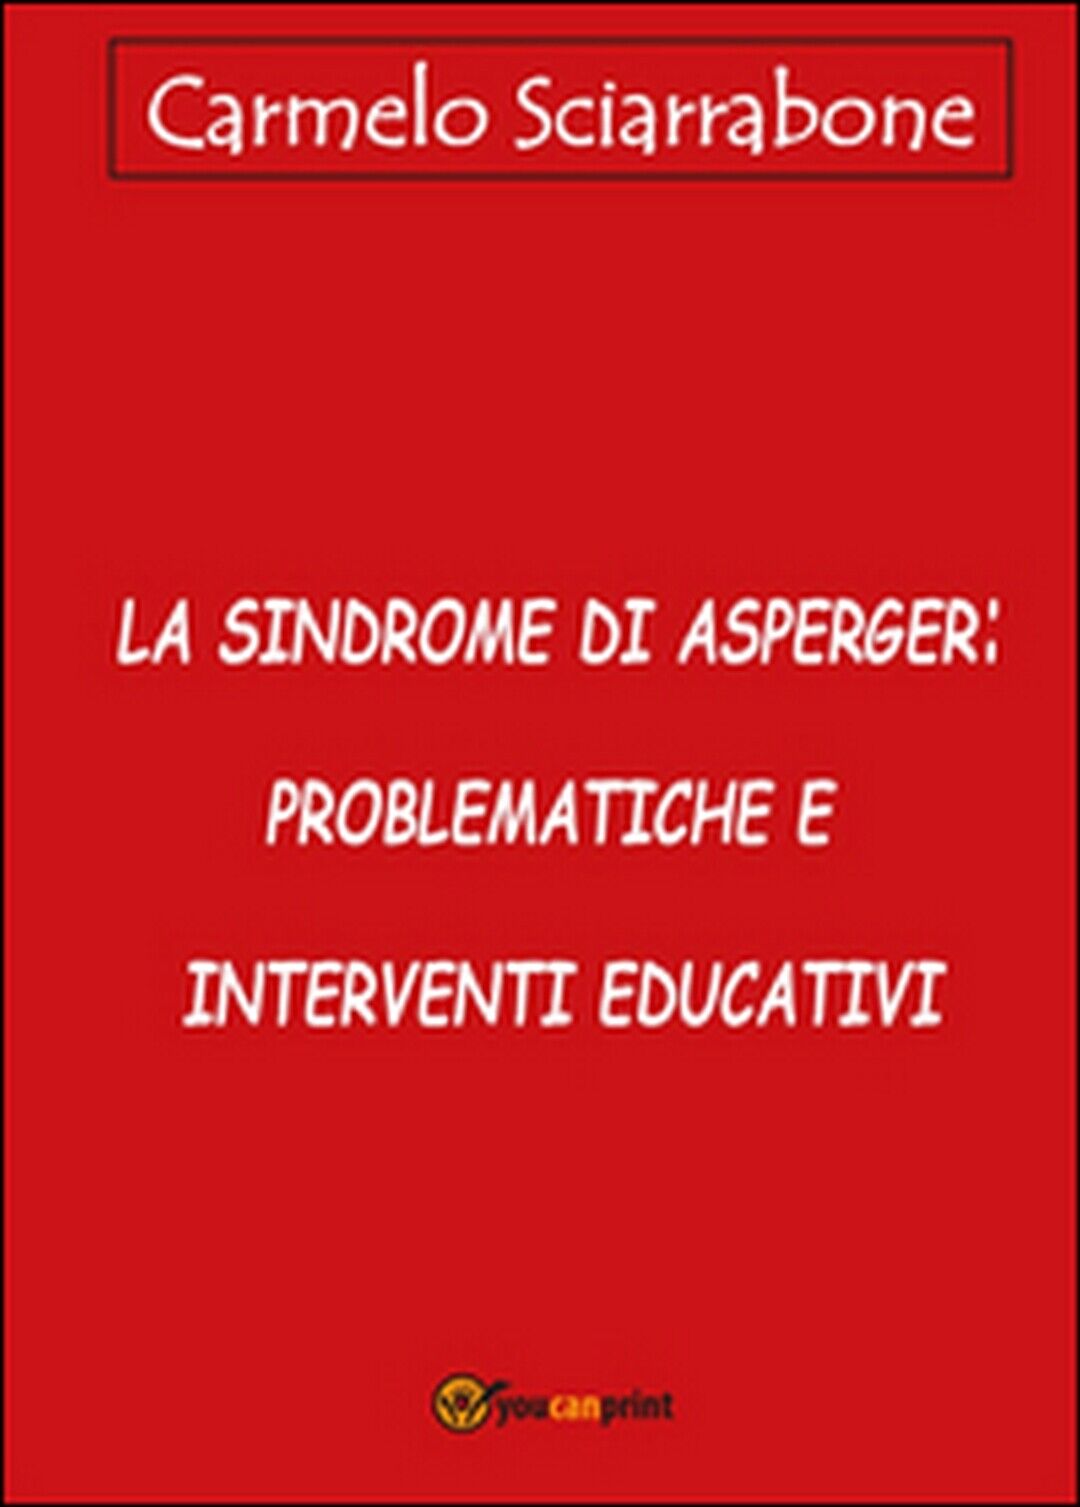 La sindrome di Asperger: problematiche e interventi educativi (Sciarrabone)